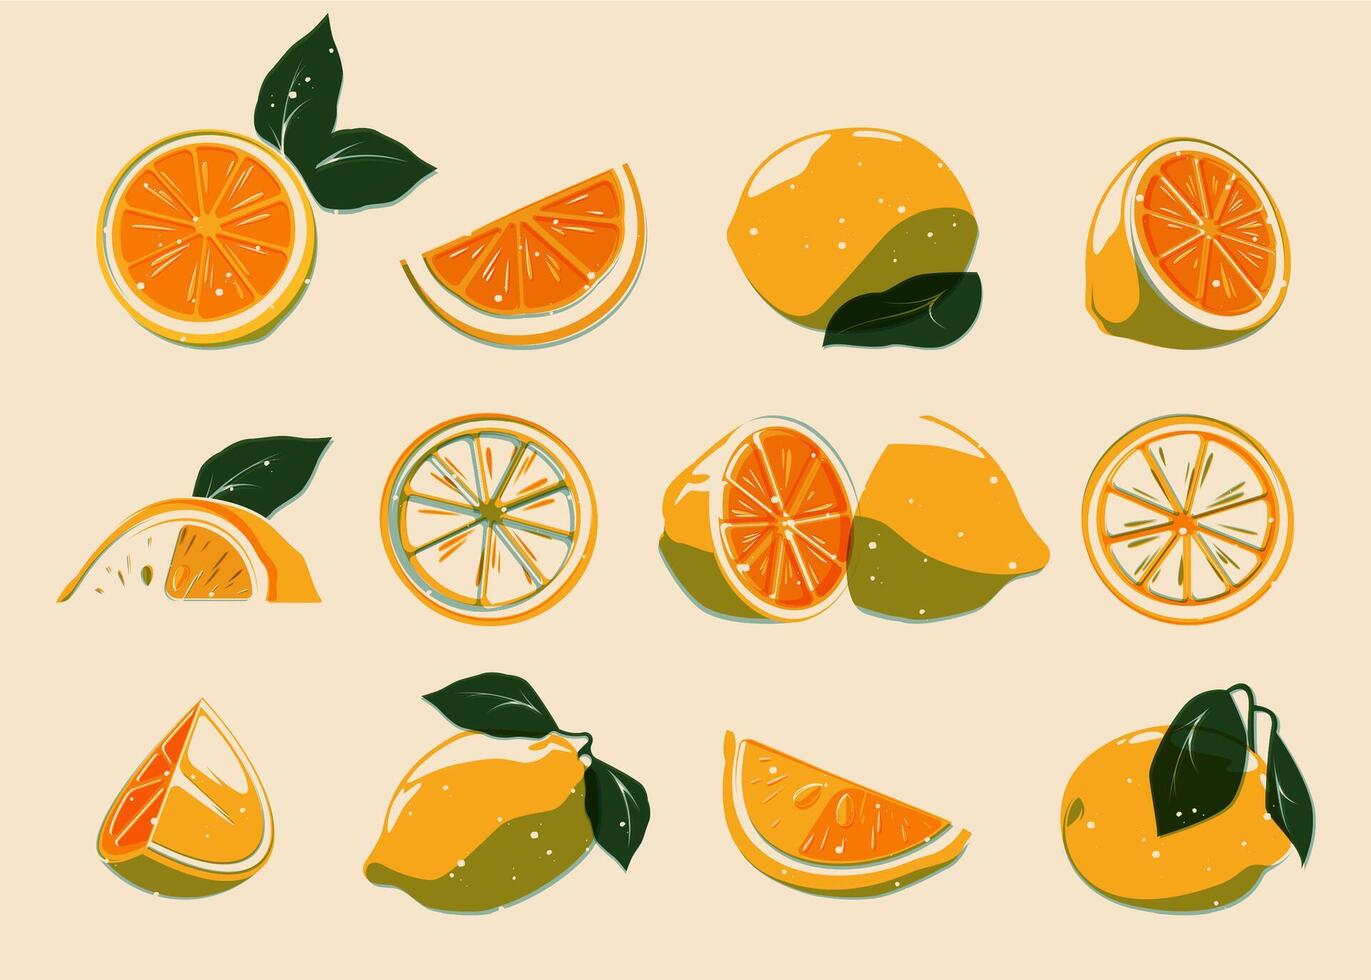 affettato stampato limoni. fresco biologico agrume pezzi, cartone animato naturale botanico Limone arancia mandarino elementi per dieta e salutare cibo logo design. vettore isolato impostato